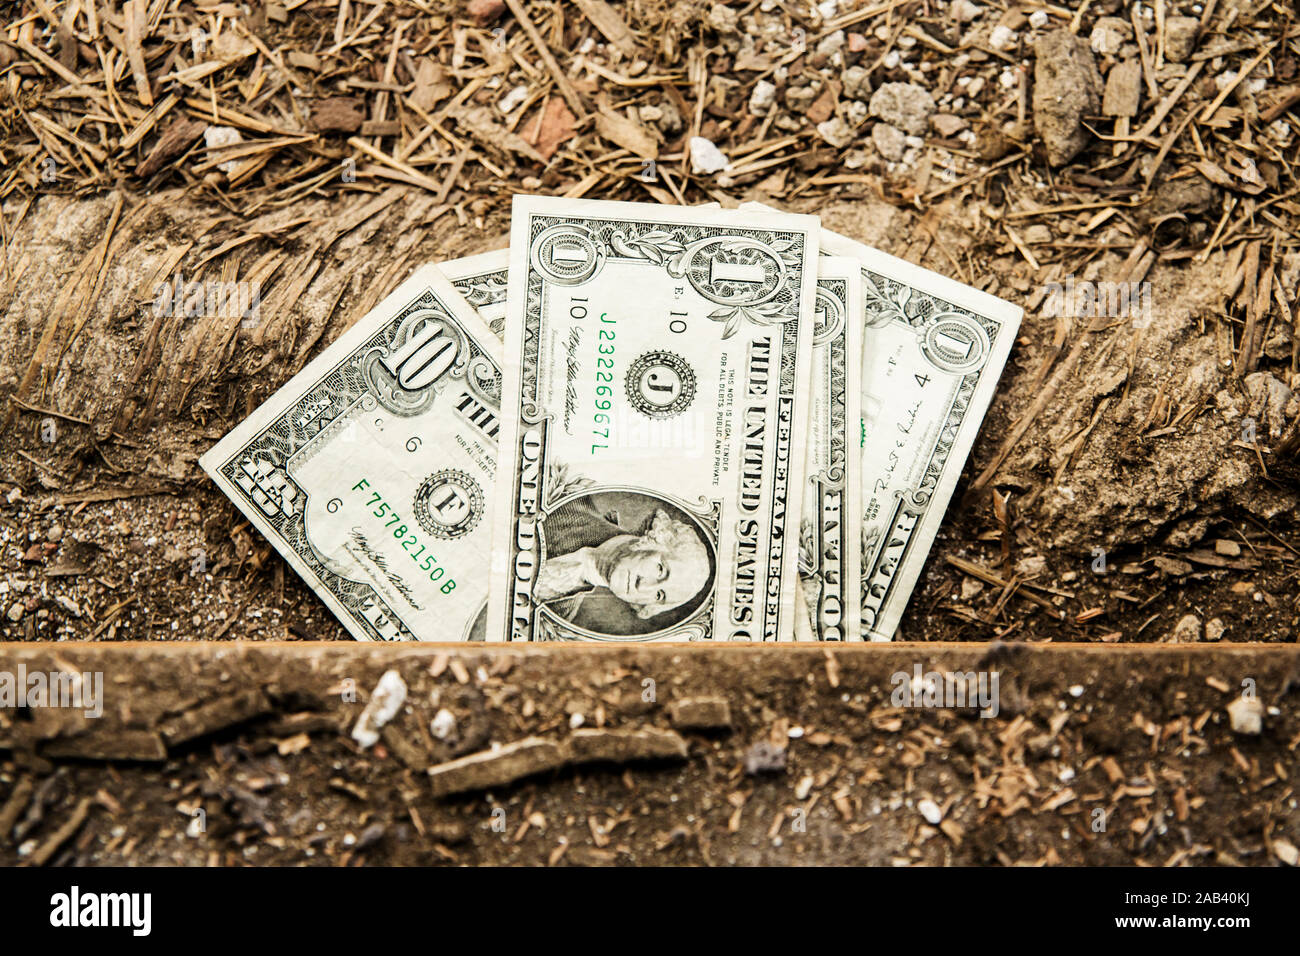 Dollarnoten schauen unter einem aufgerissenen Fußboden hervor |Dollar bills look from beneath a wide-open floor| Stock Photo